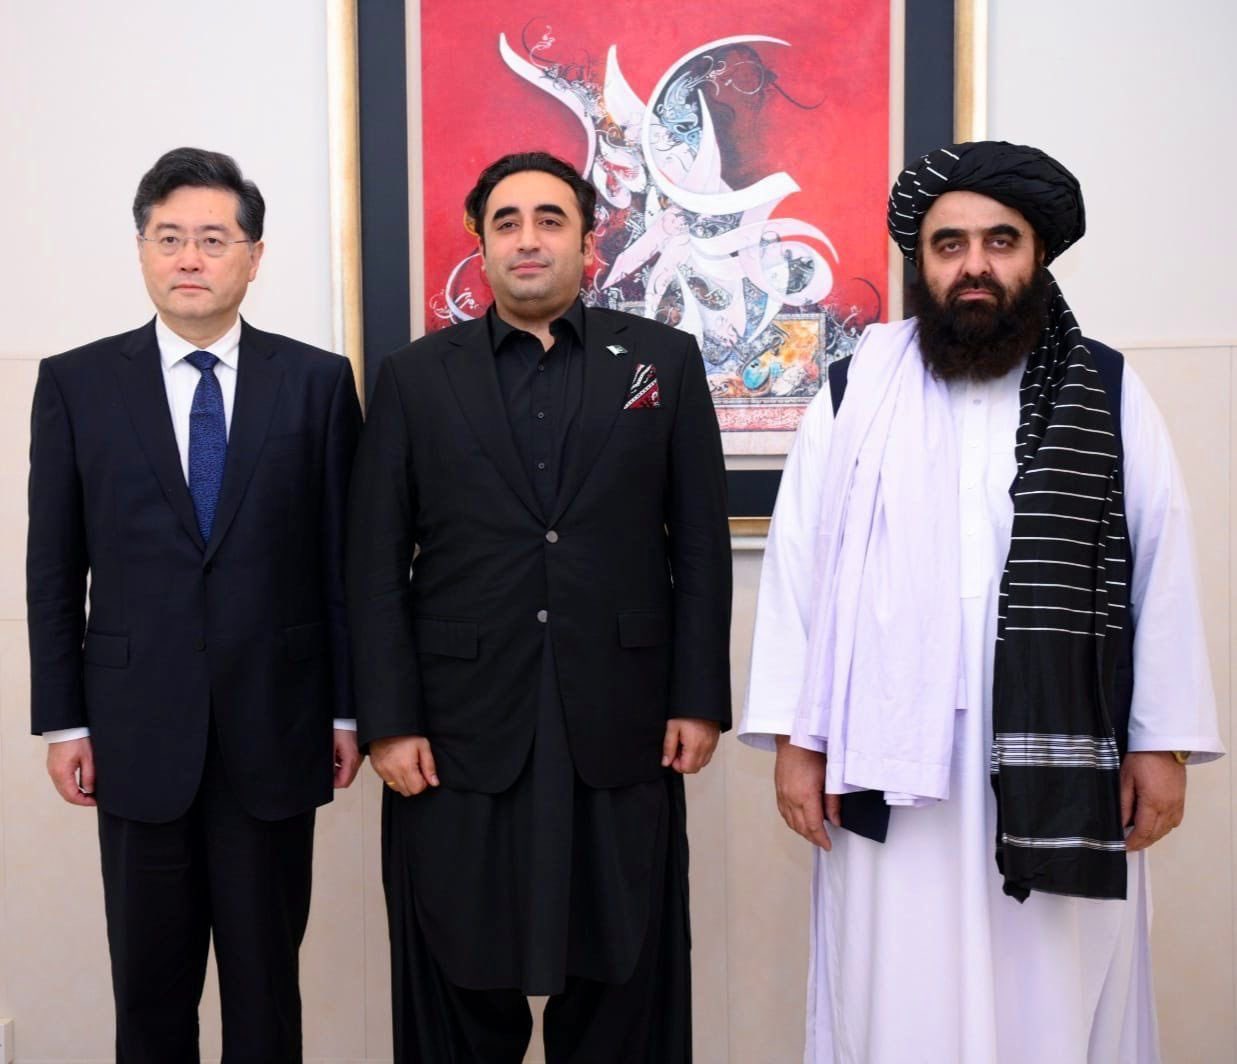 اسلام آباد میں چین ،افغانستان اور پاکستان کے وزرائے خارجہ کے پانچویں سہ فریقی مذاکرات